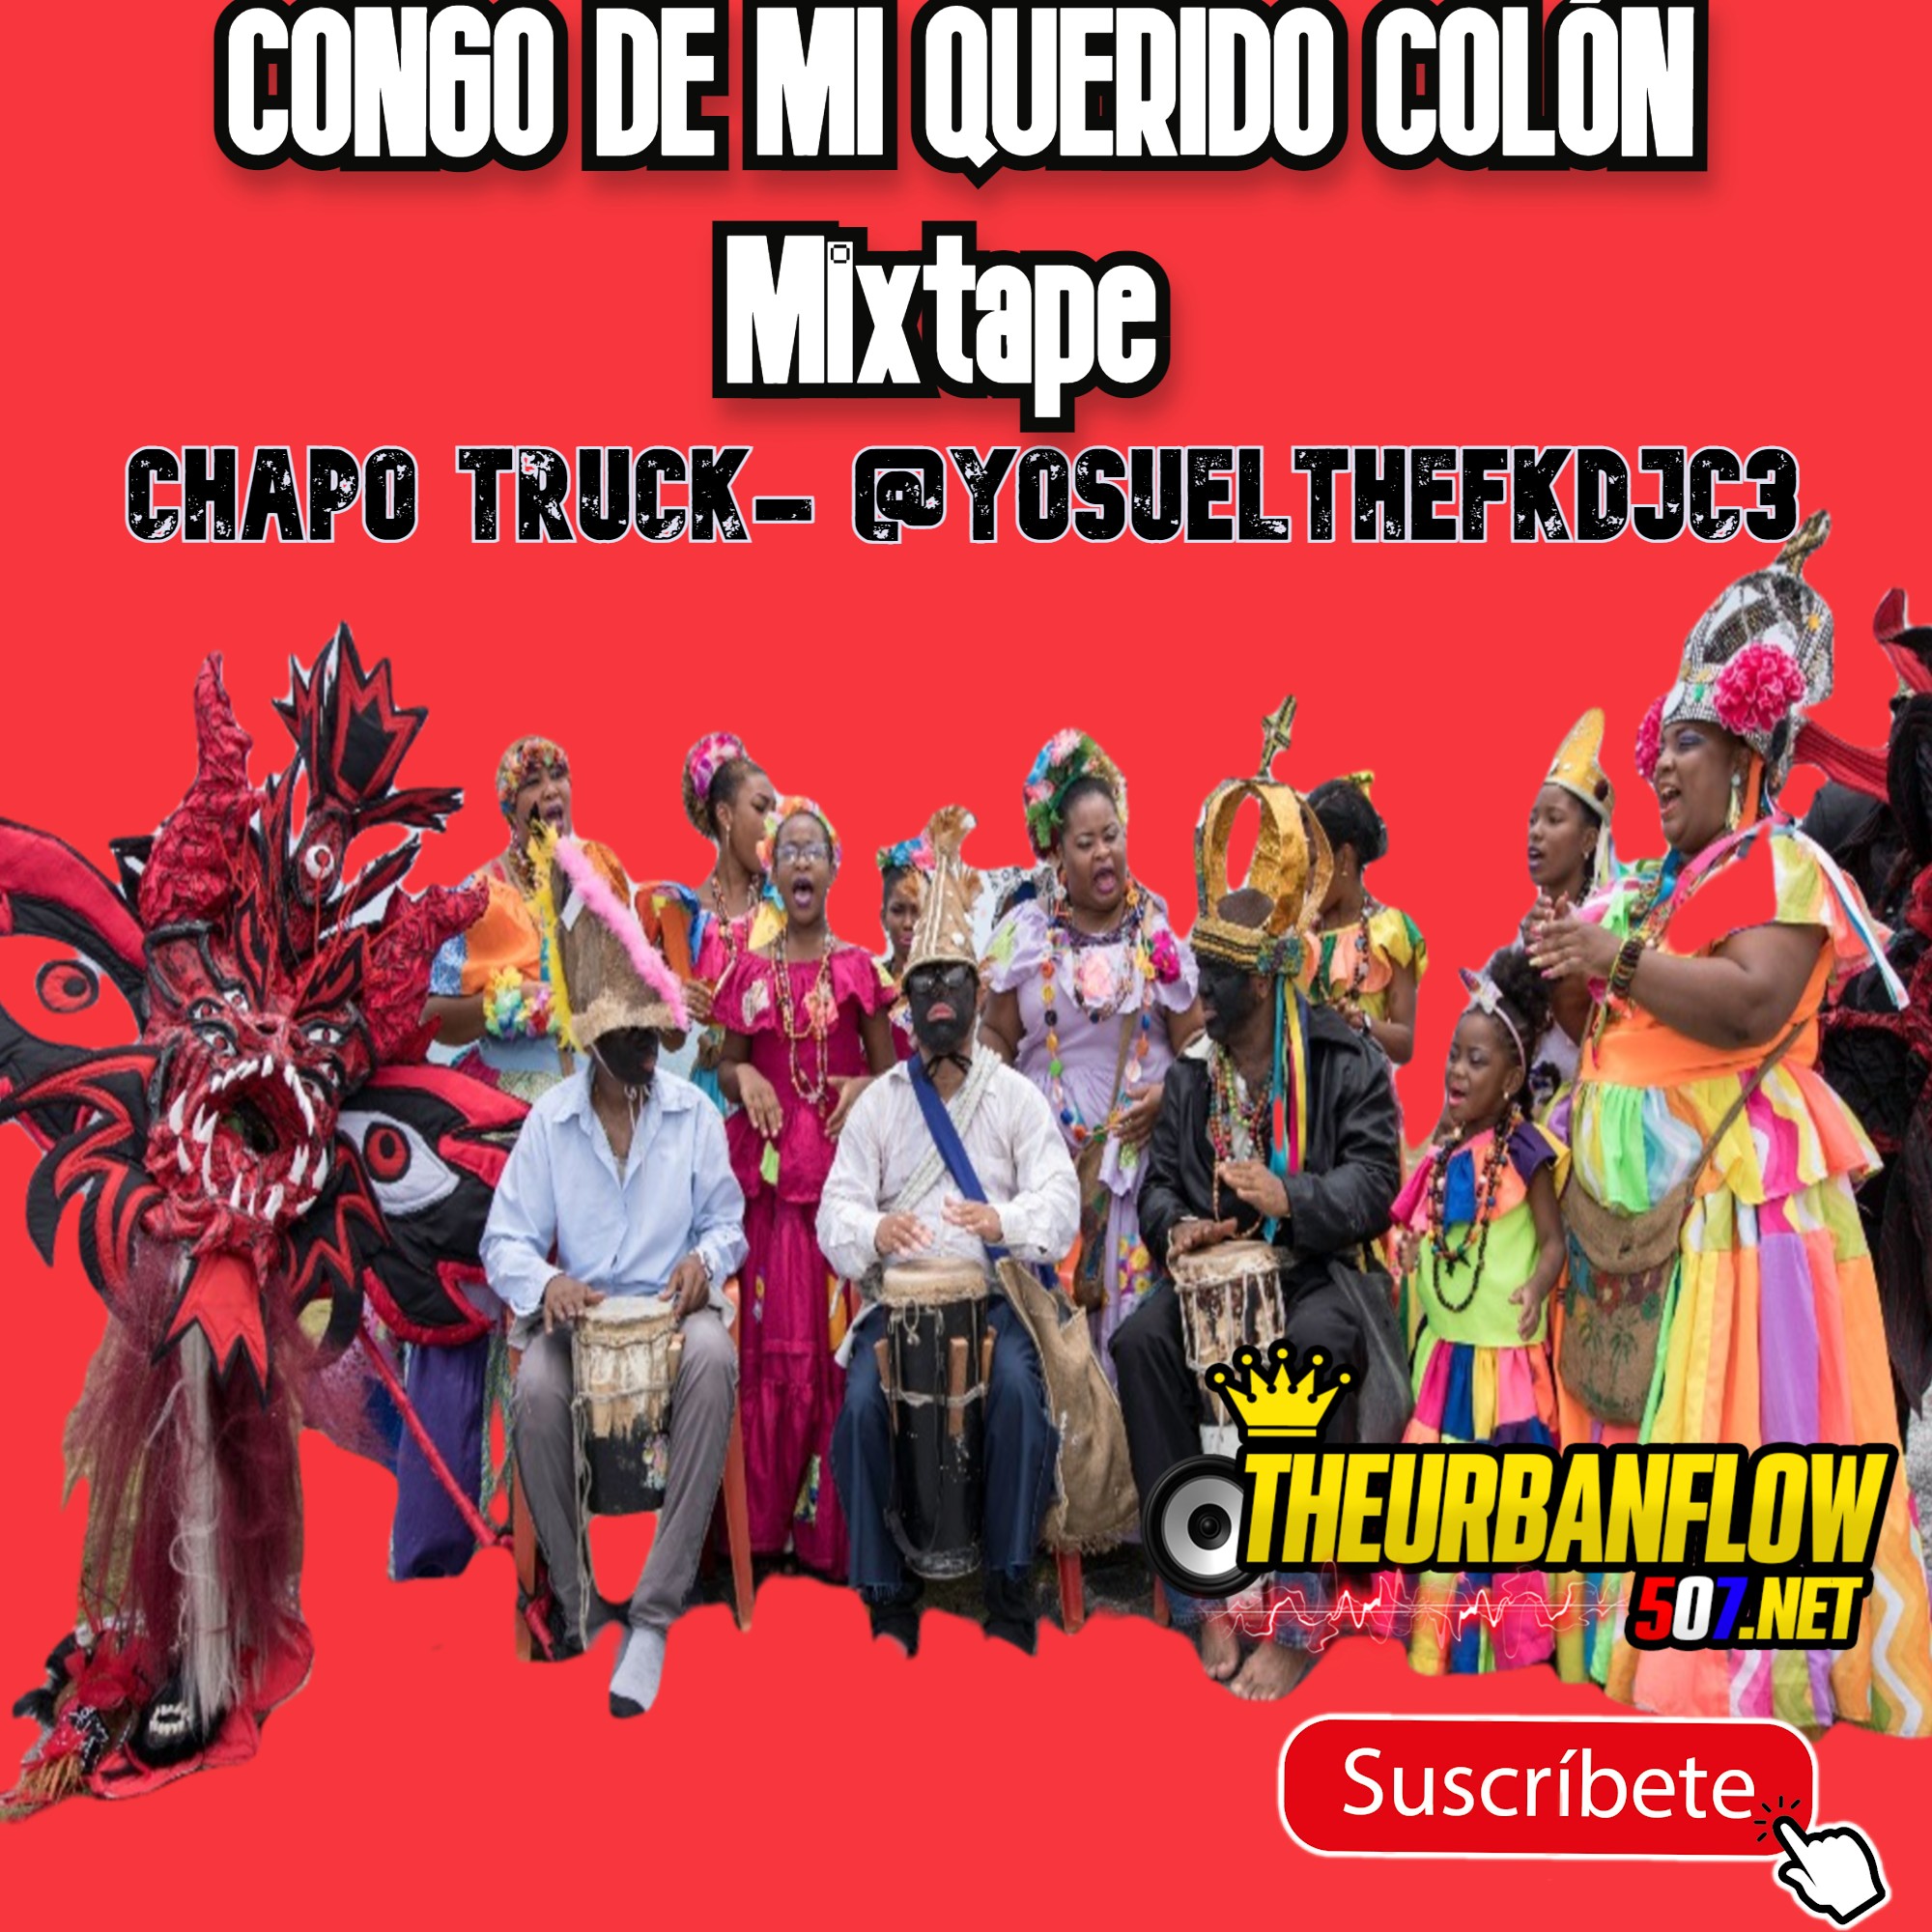 CONGO DE MI QUERIDO COLÓN Mixtape -  CHAPO TRUCK- @YosuelTheFkDjC3